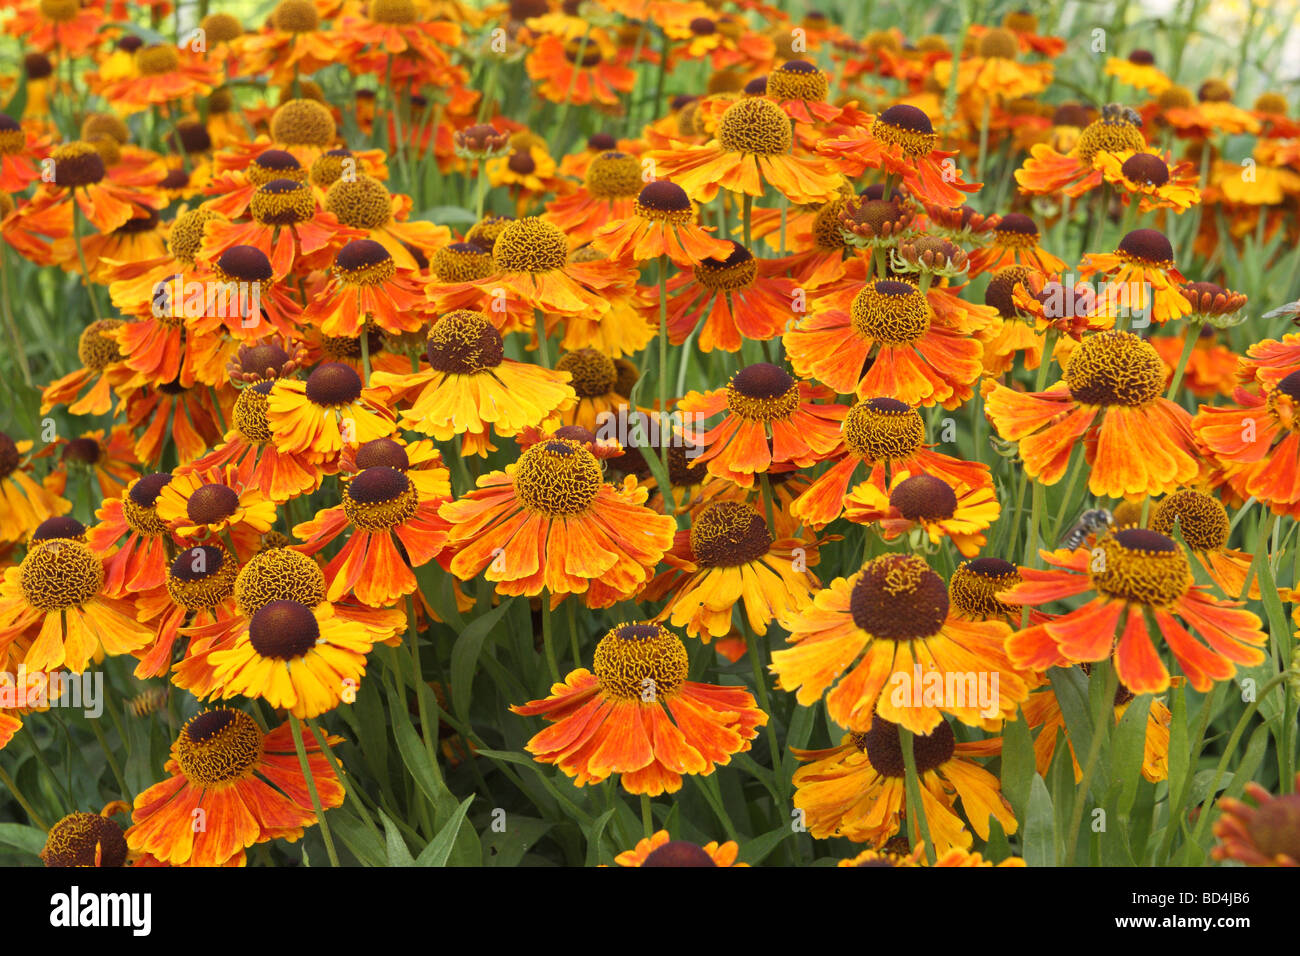 Sneezweed orange yellow flowers blooming Helenium 'Waltraut' Stock Photo